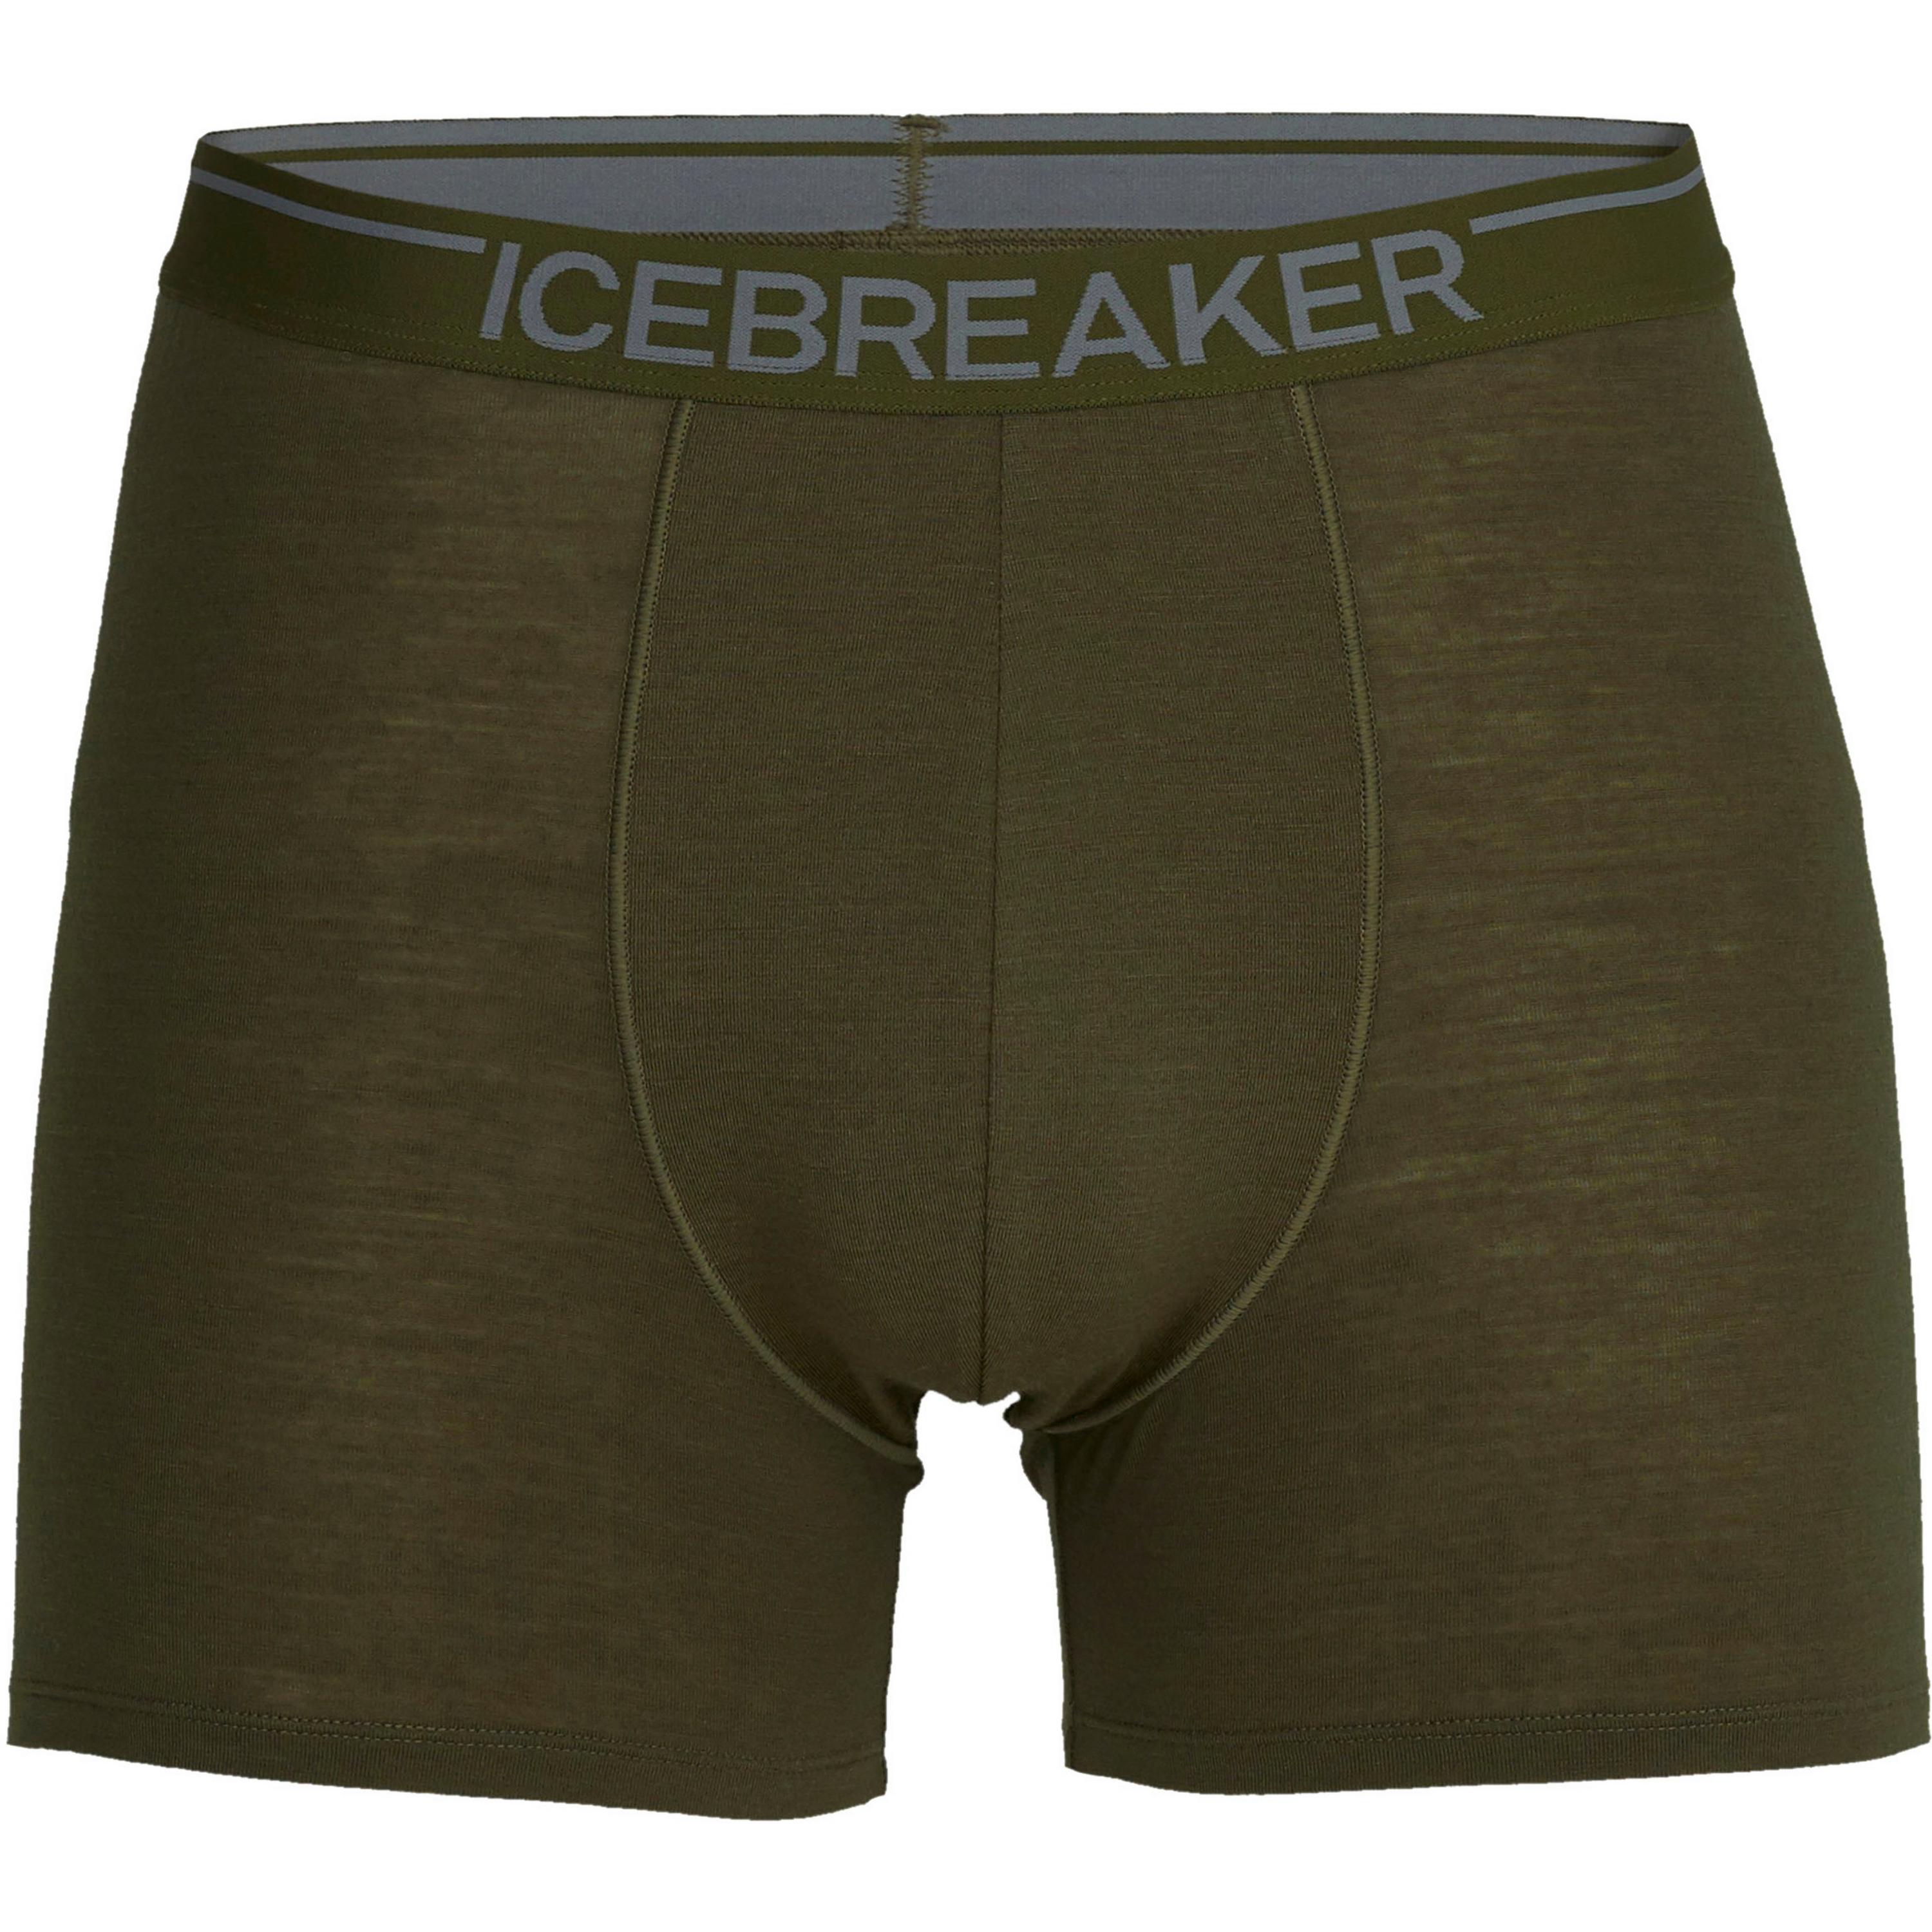 Image of Icebreaker Anatomica Boxershorts Herren